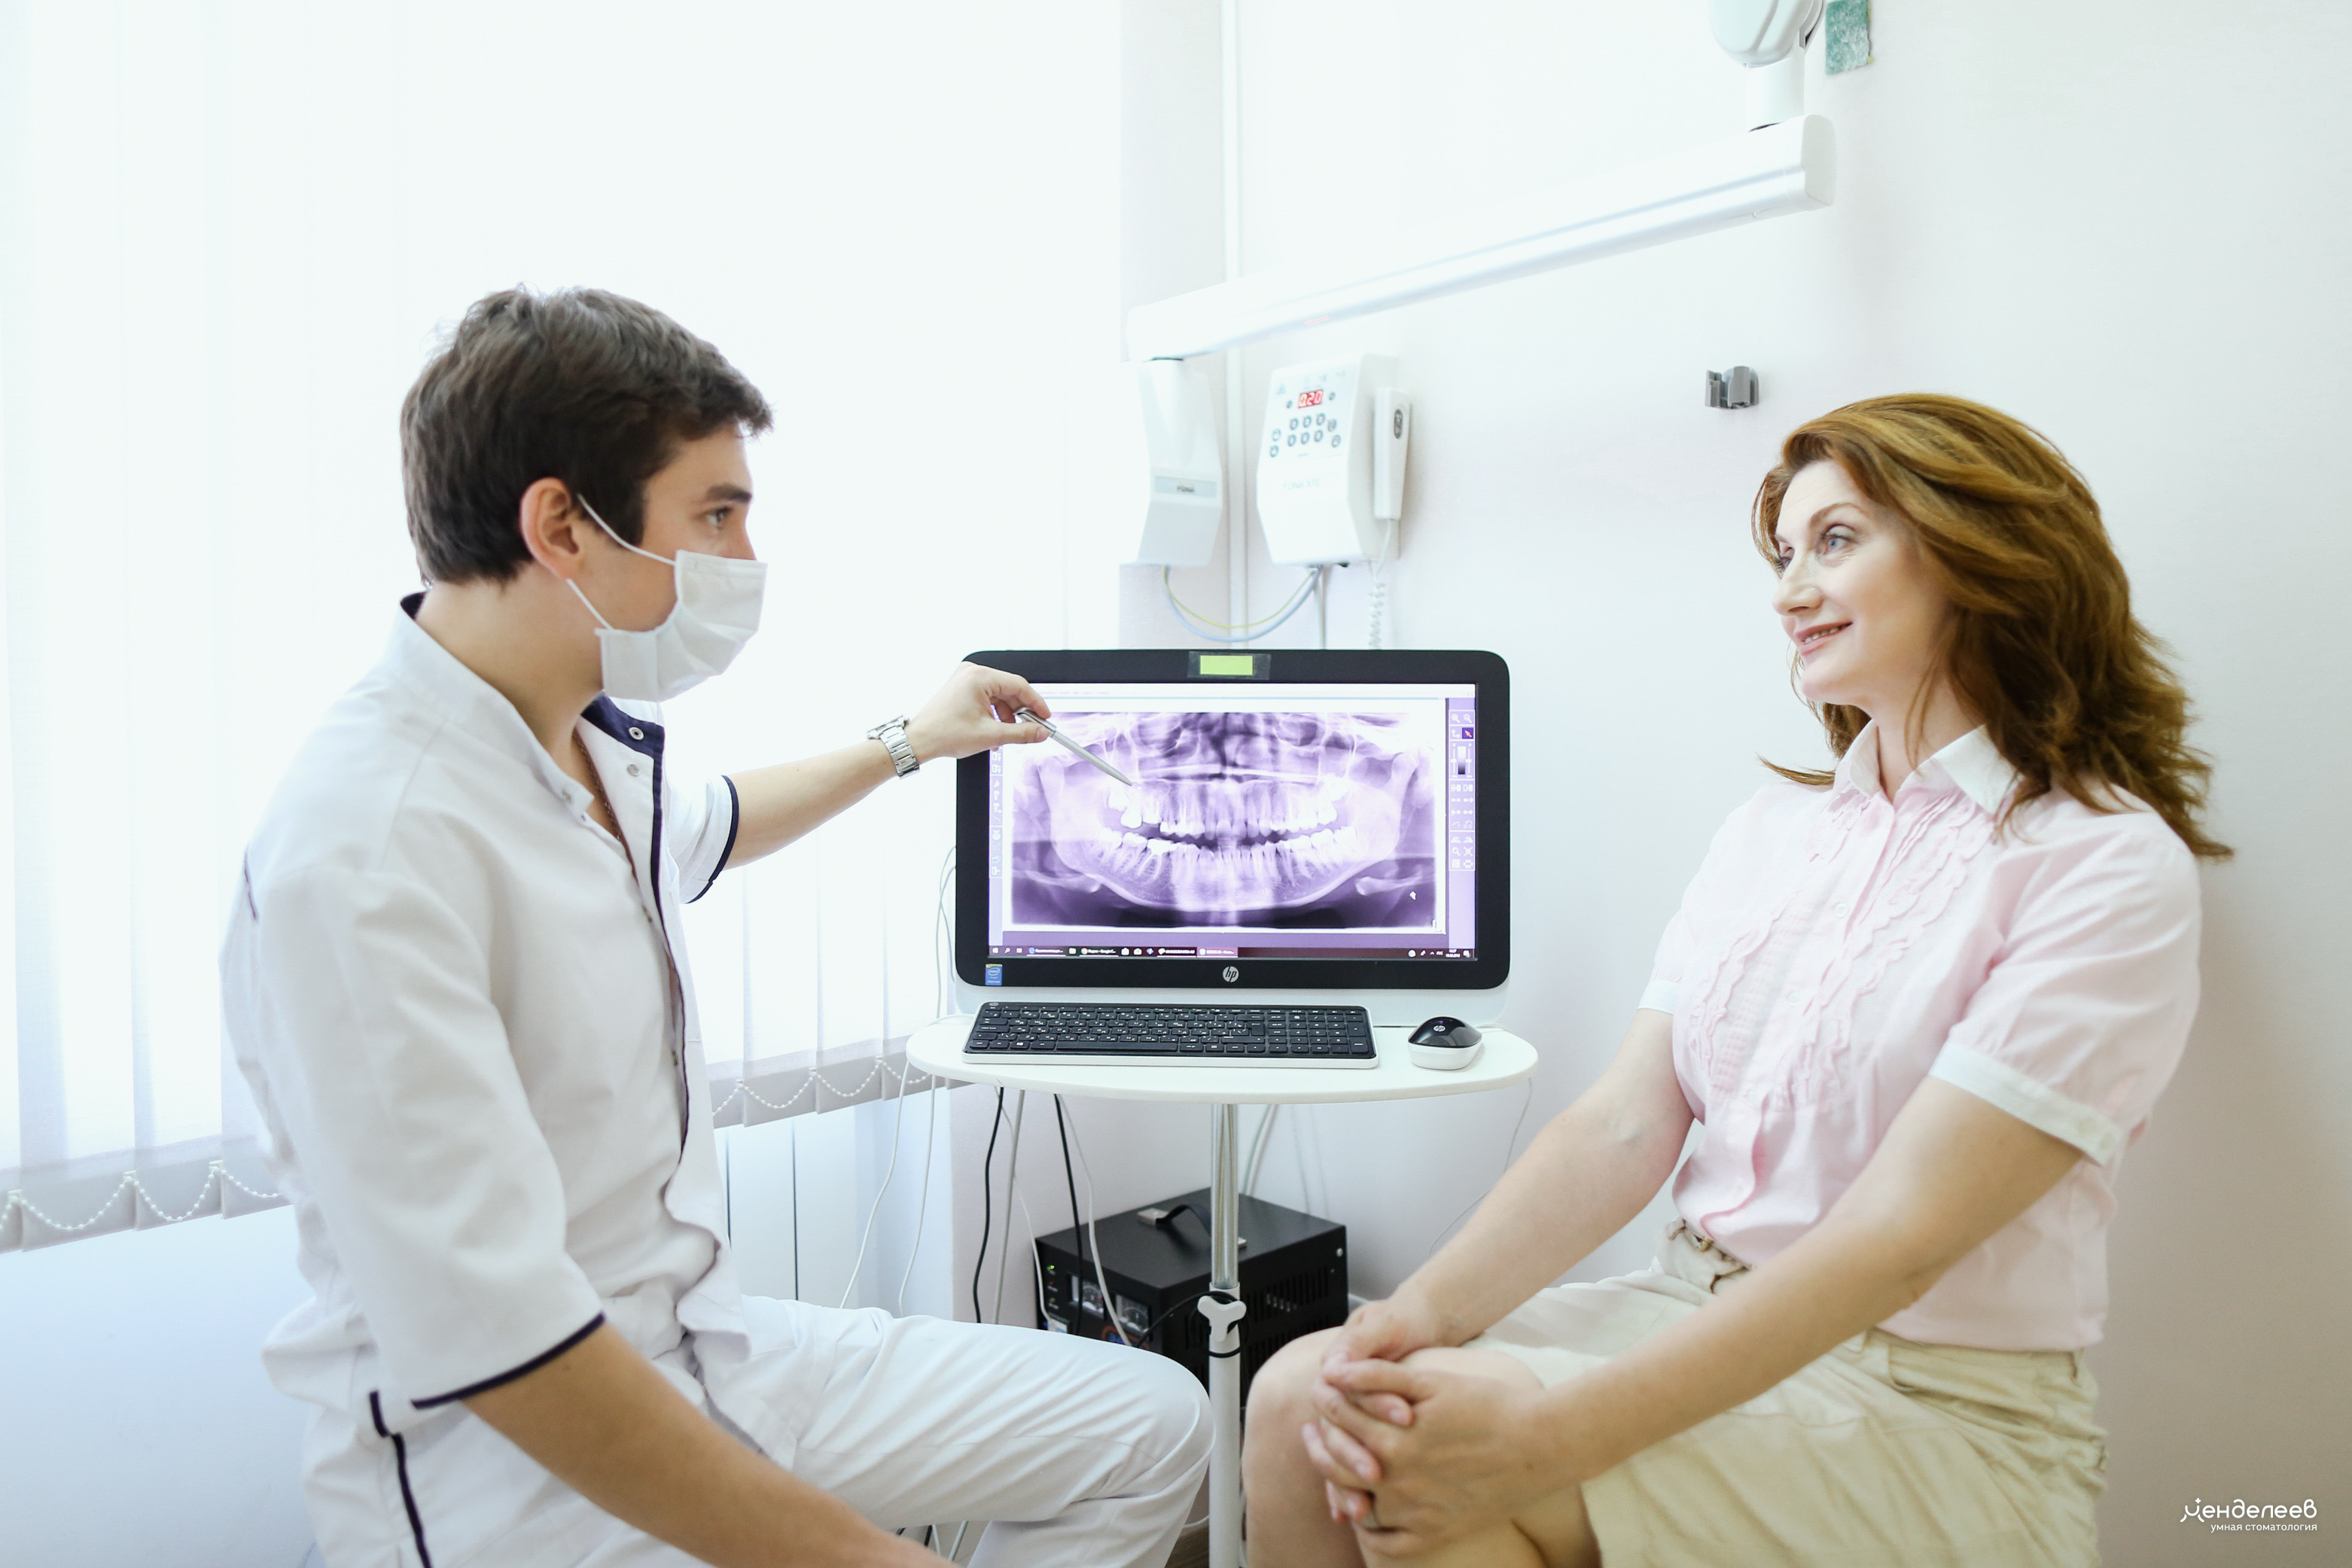 стоматолог обсуждает с пациентом рентгеновский снимок